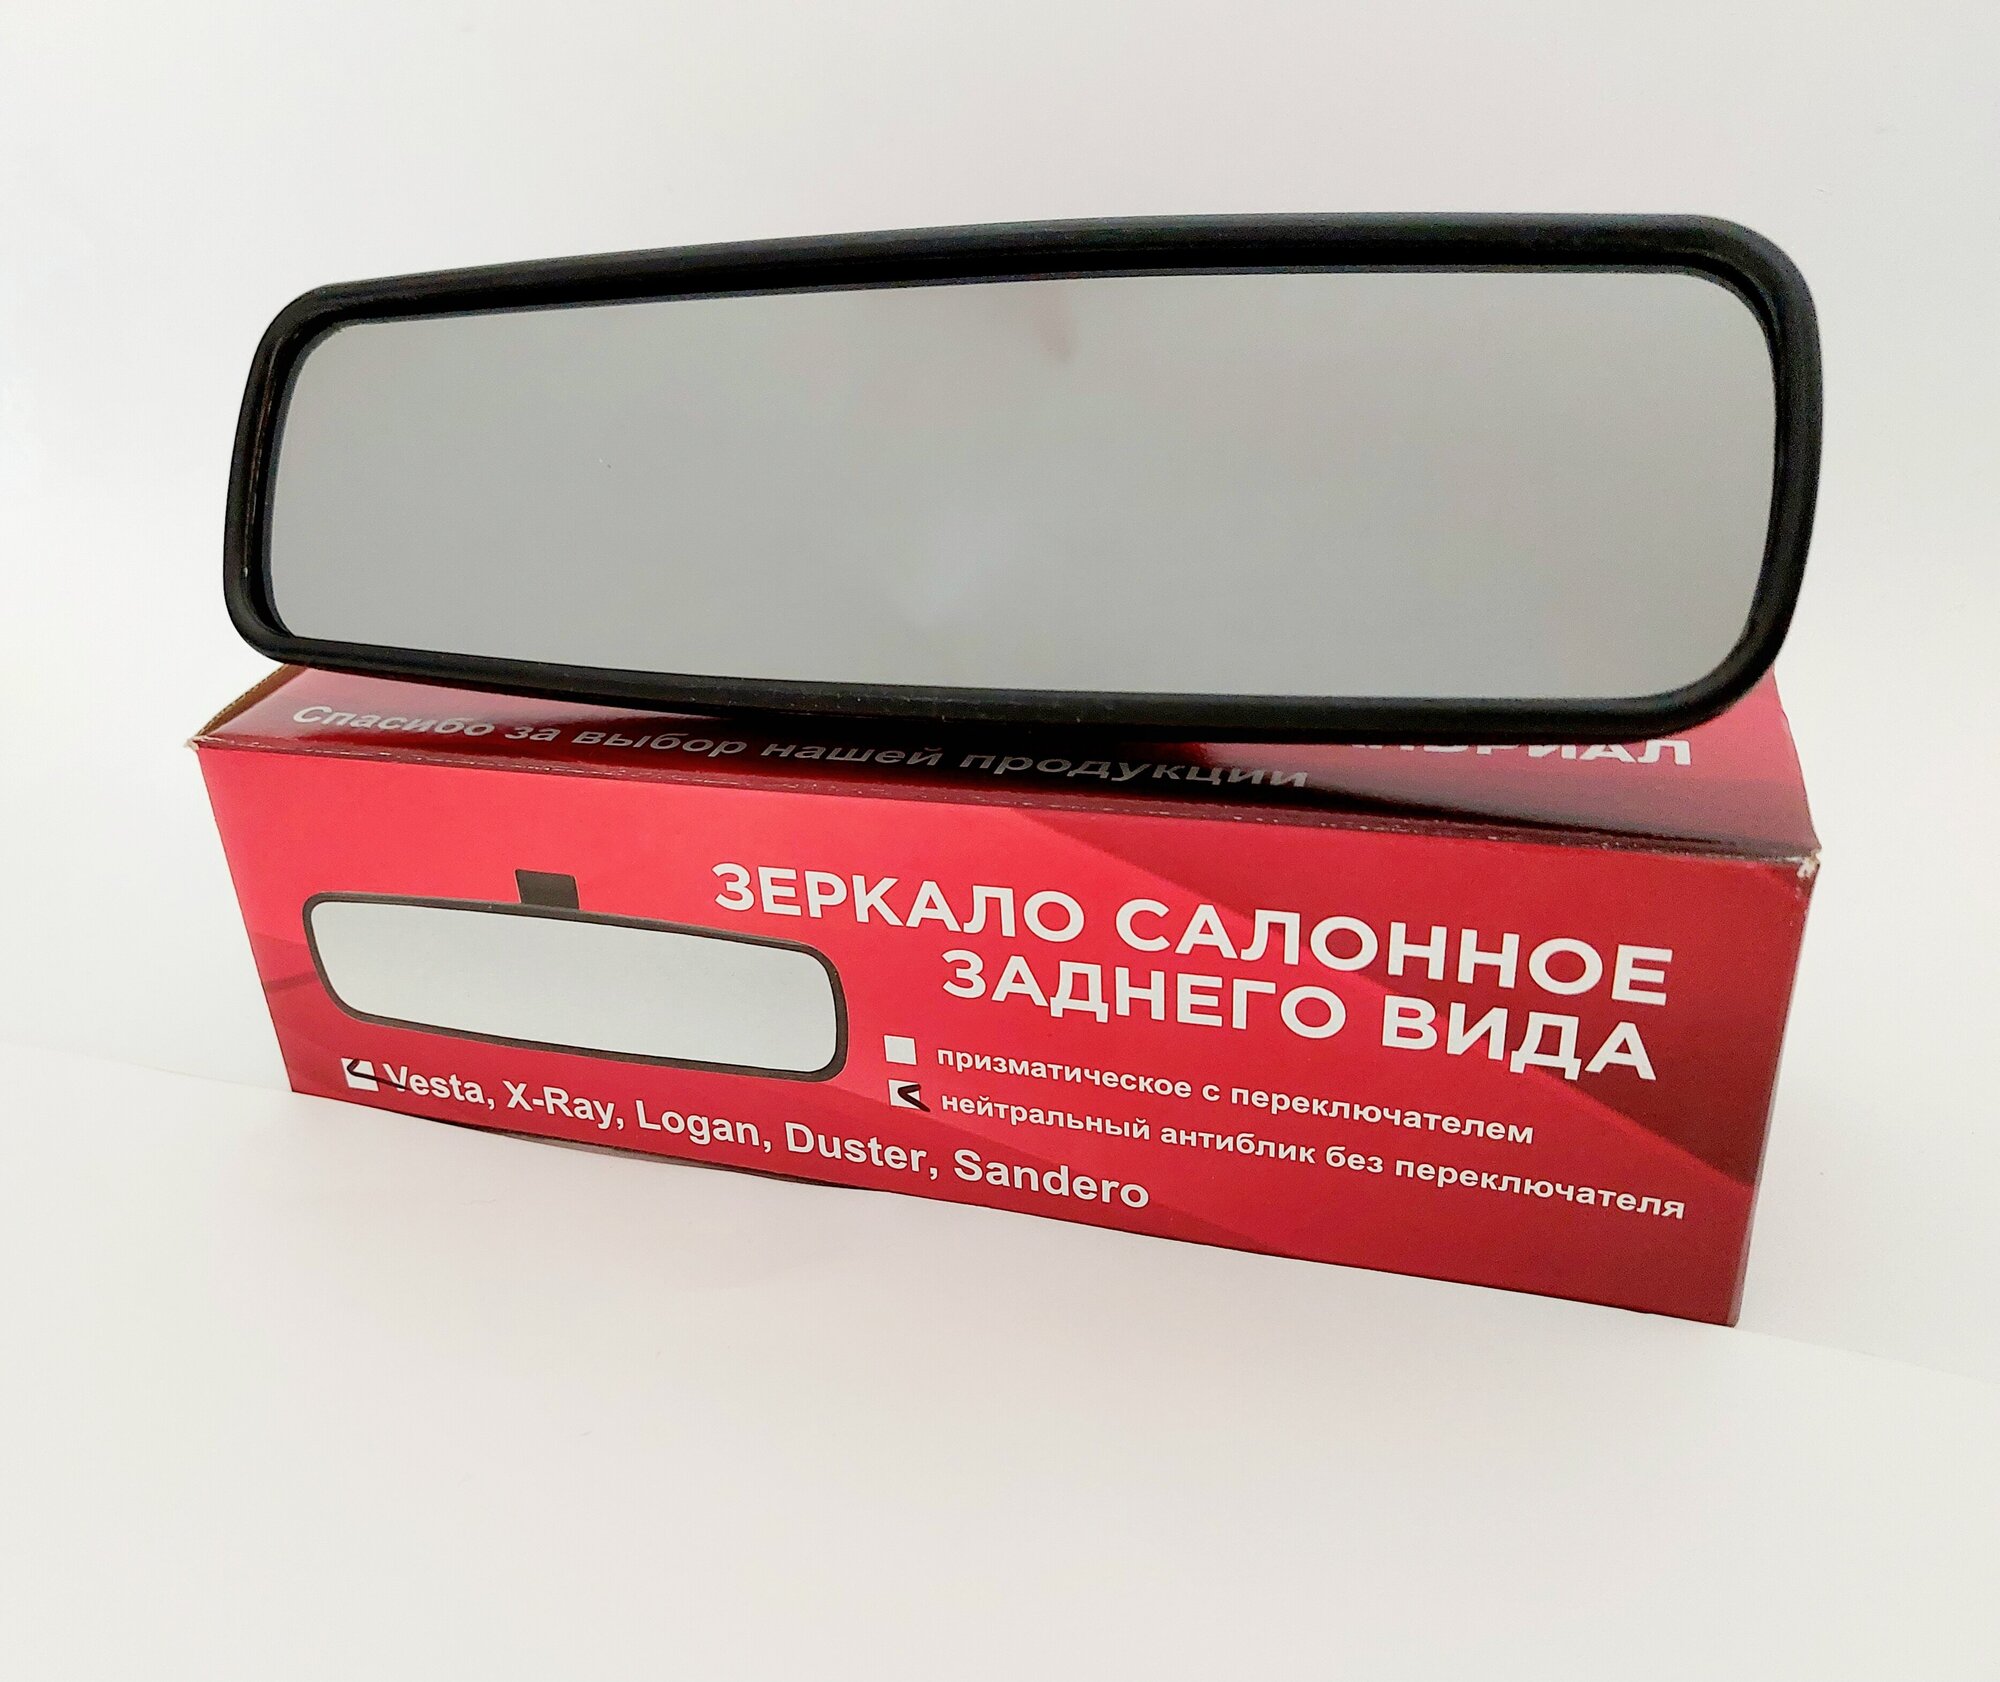 Зеркало салонное заднего вида с нейтральным антибликом без переключателя для LADA Vesta X-Ray/Renault Logan Duster Sandero